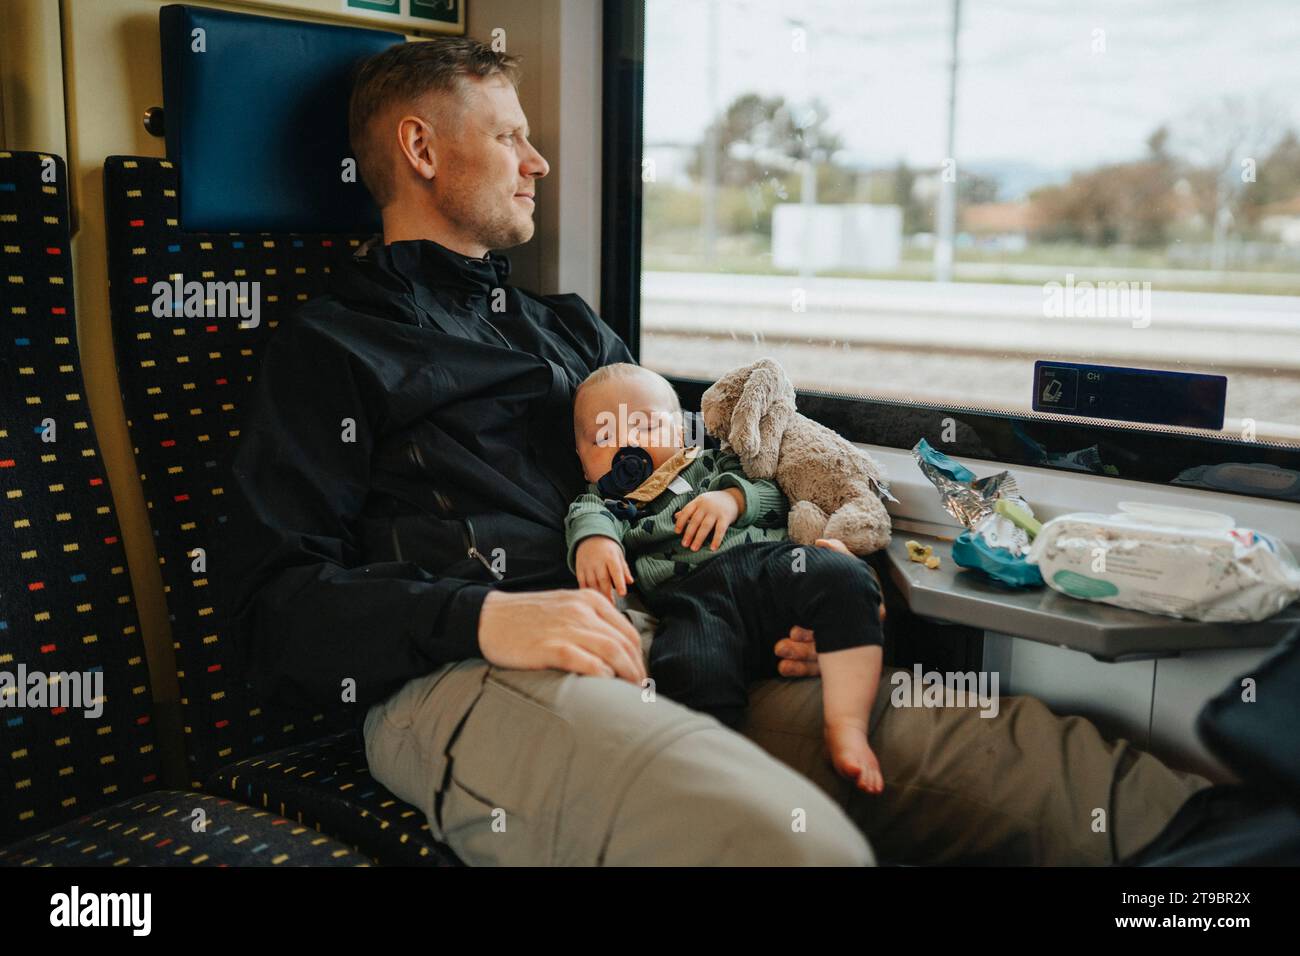 Père voyageant avec bébé en train Banque D'Images